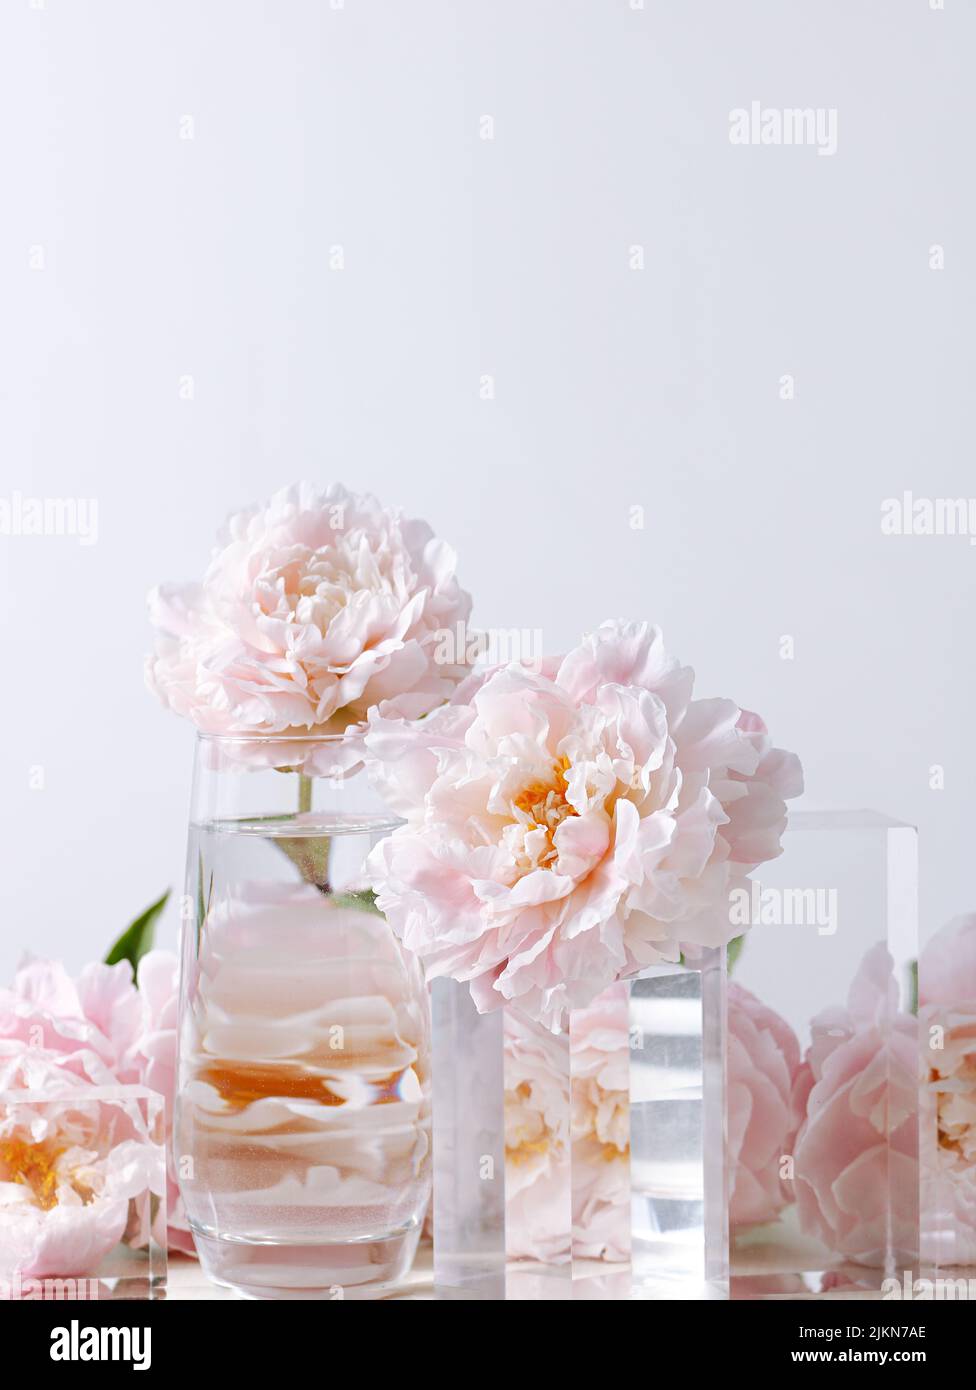 Un cliché vertical de belles fleurs de pivoine rose dans un vase en verre sur fond blanc Banque D'Images